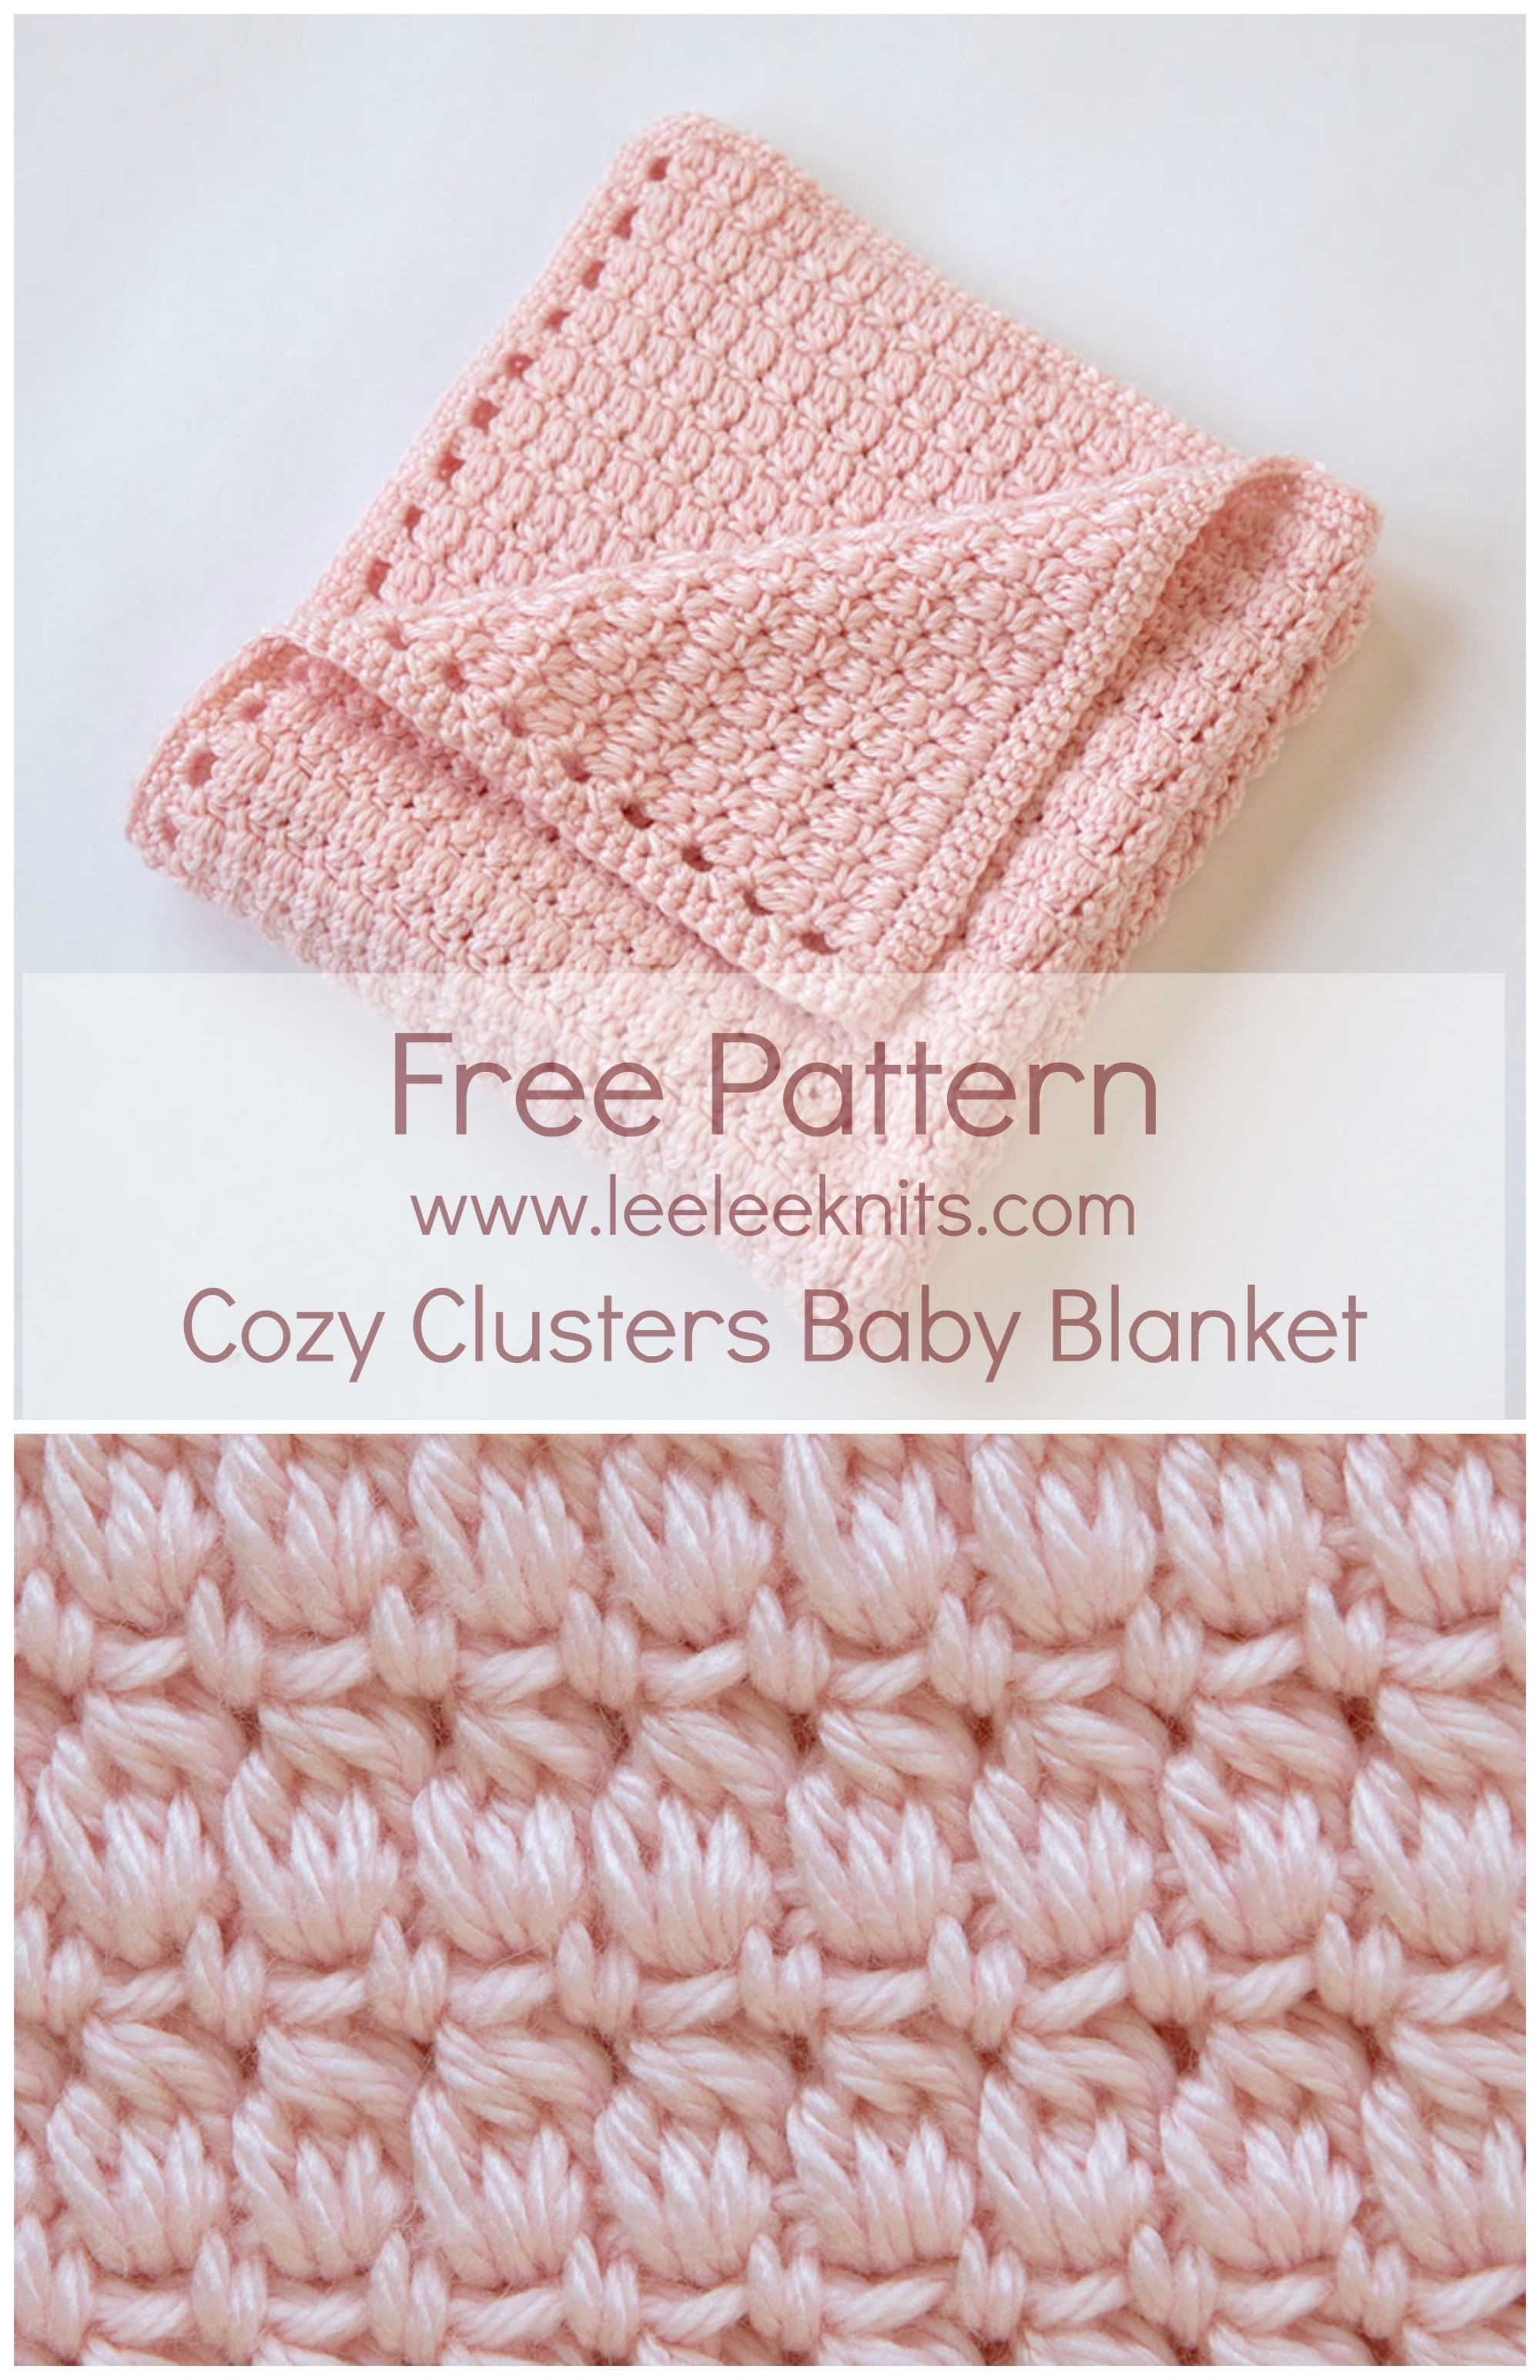 Easy Baby Blanket Crochet Patterns For Beginners Crocheted Ba Blankets Patterns Free Free Fast Easy Crochet Blanket